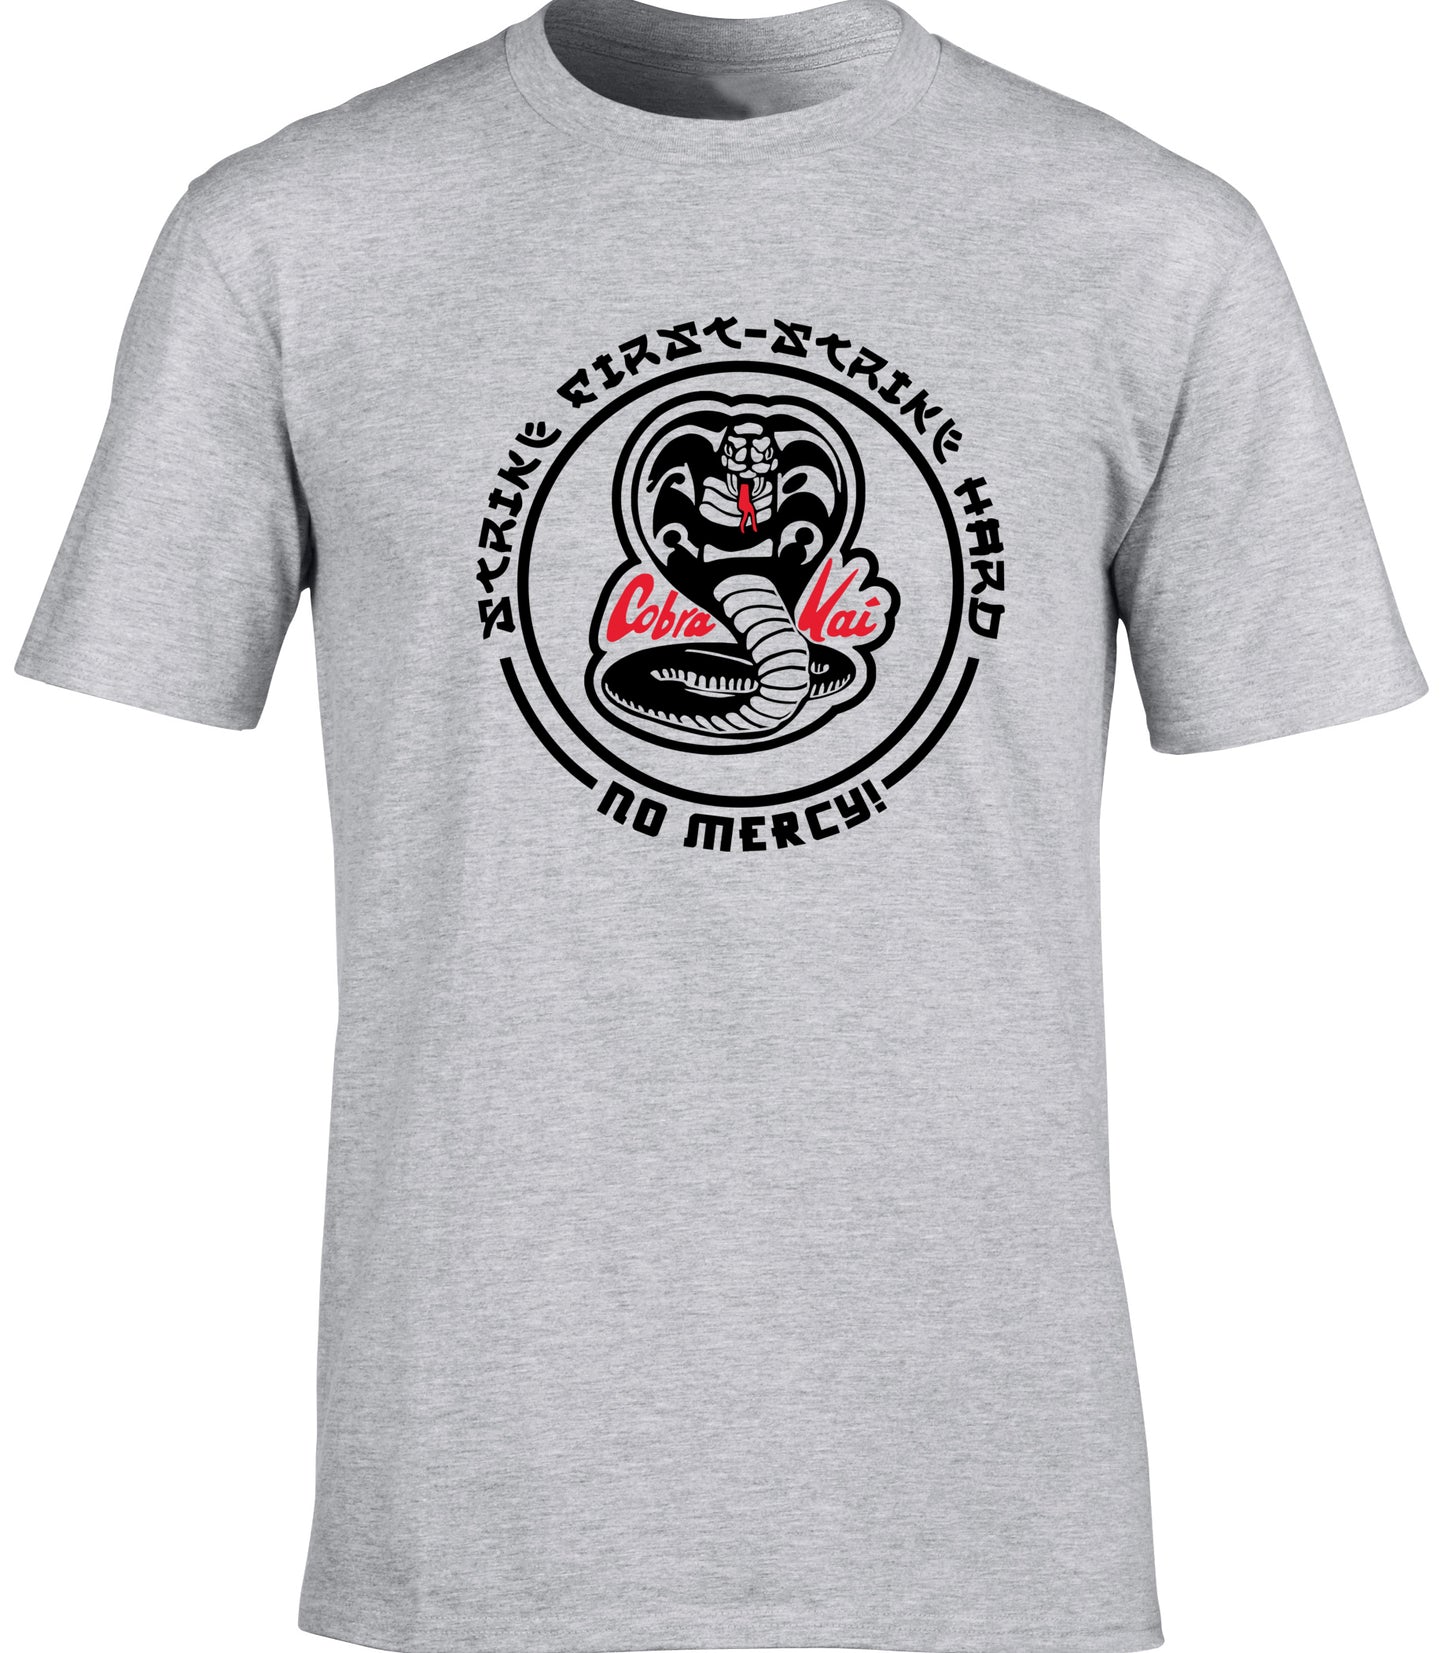 COBRA KAI STRIKE FIRST - STRIKE HARD unisex t-shirt